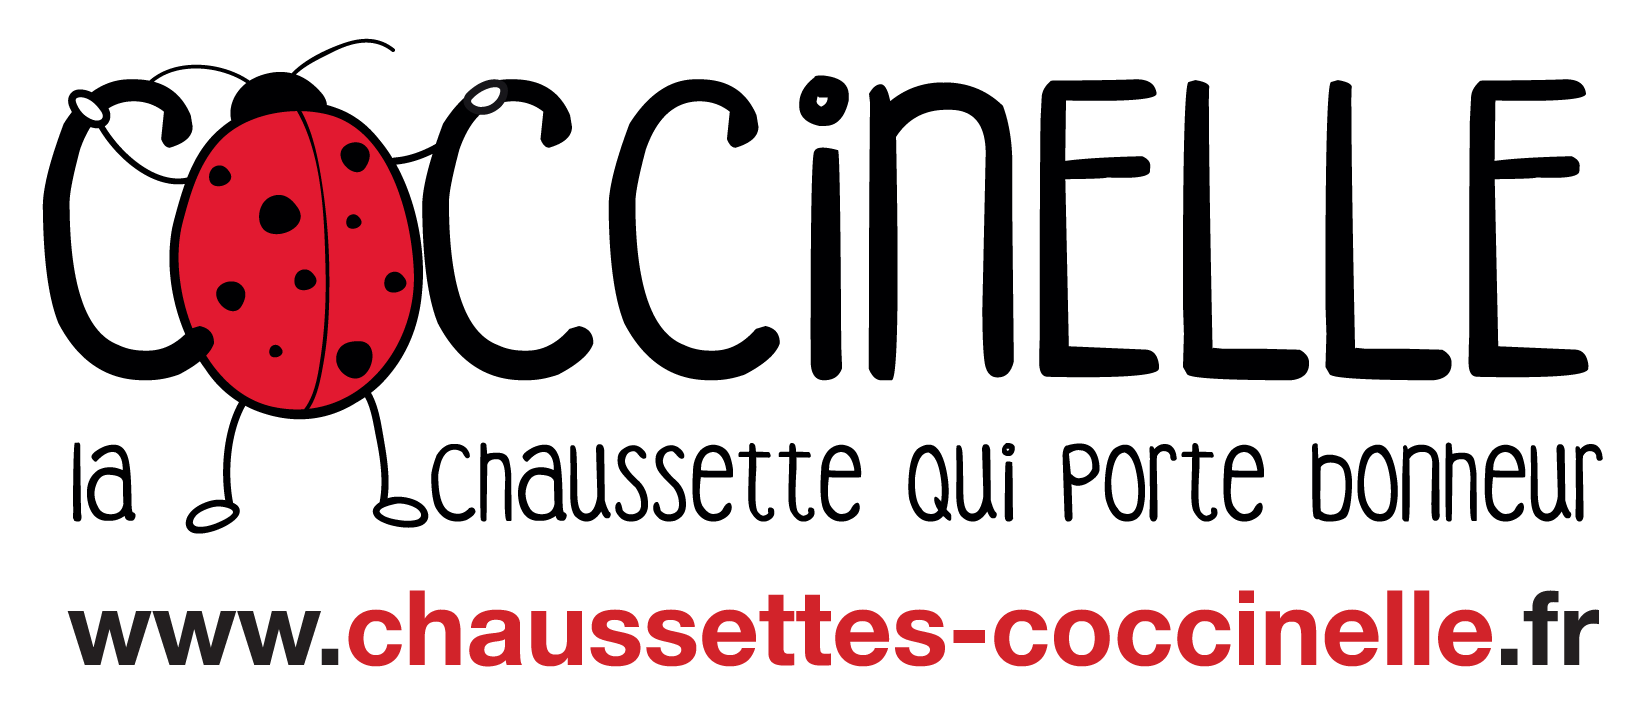 Chaussette Coccinelle